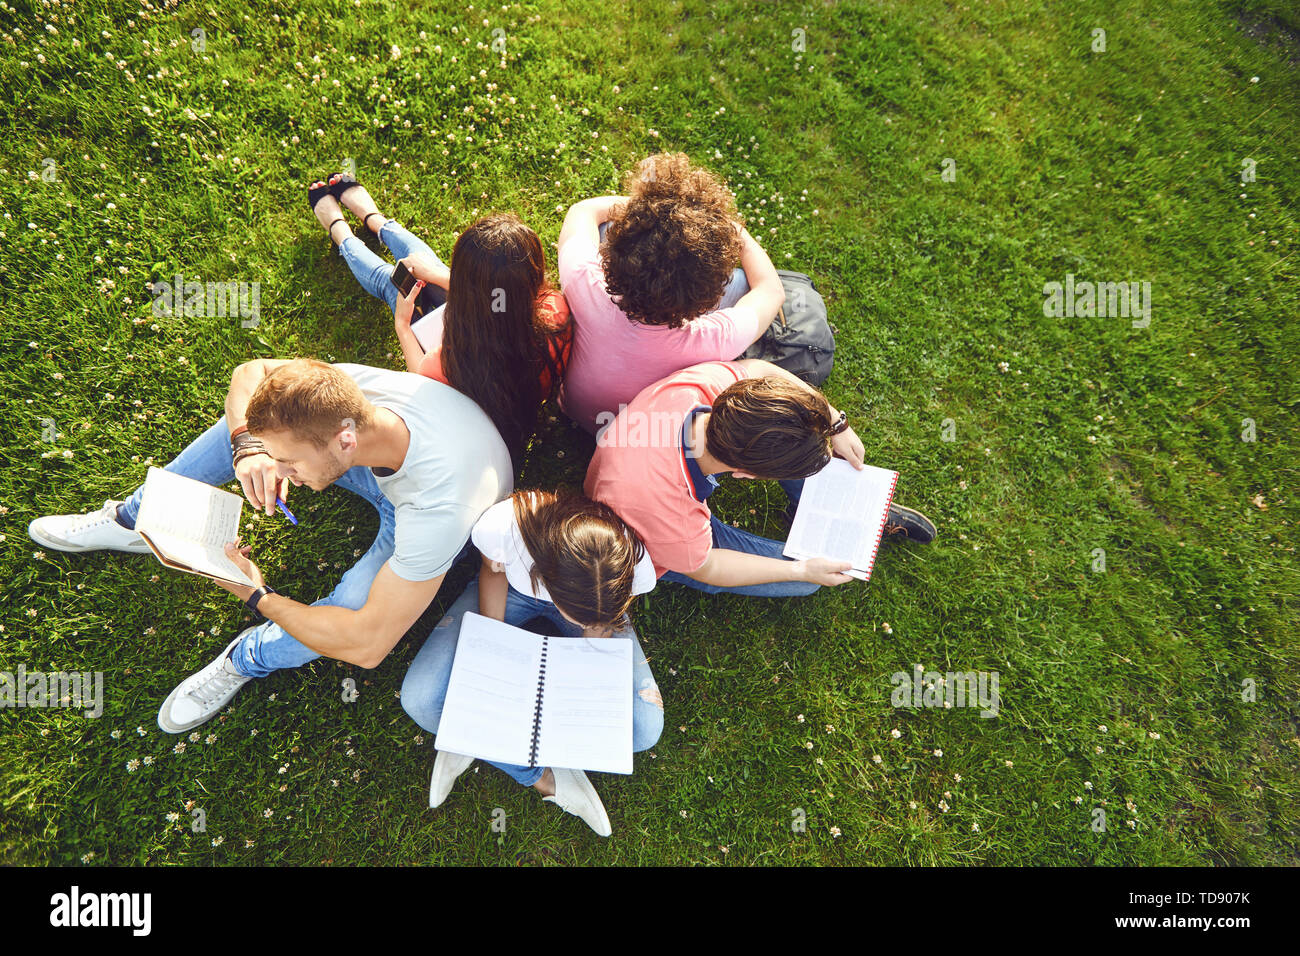 Gli studenti studiano seduti sul prato verde in un parco in estate a molla. I giovani con i libri sul prato. Foto Stock